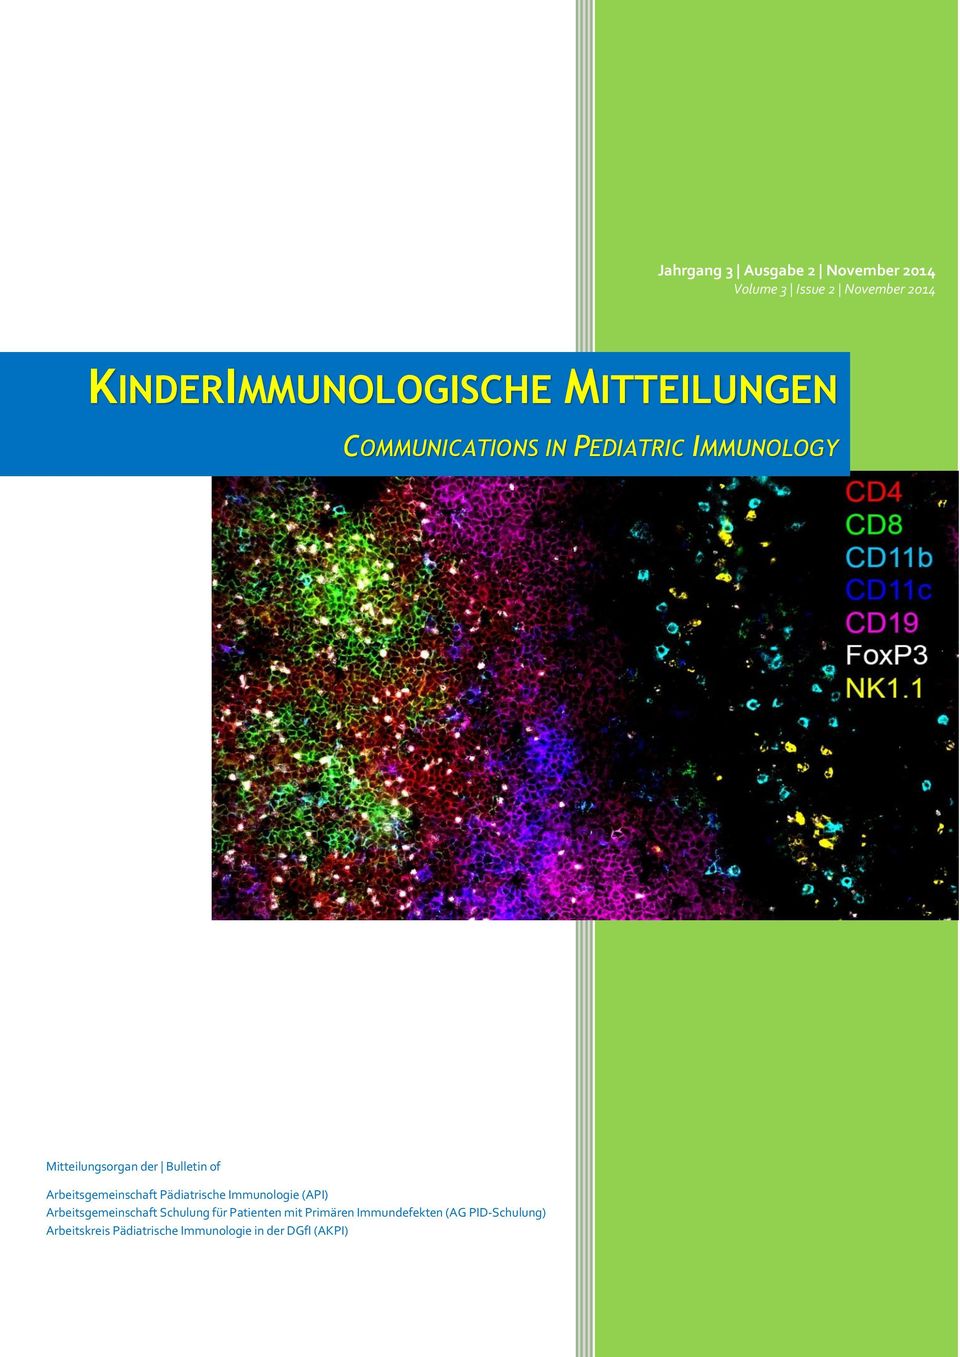 Arbeitsgemeinschaft Pädiatrische Immunologie (API) Arbeitsgemeinschaft Schulung für